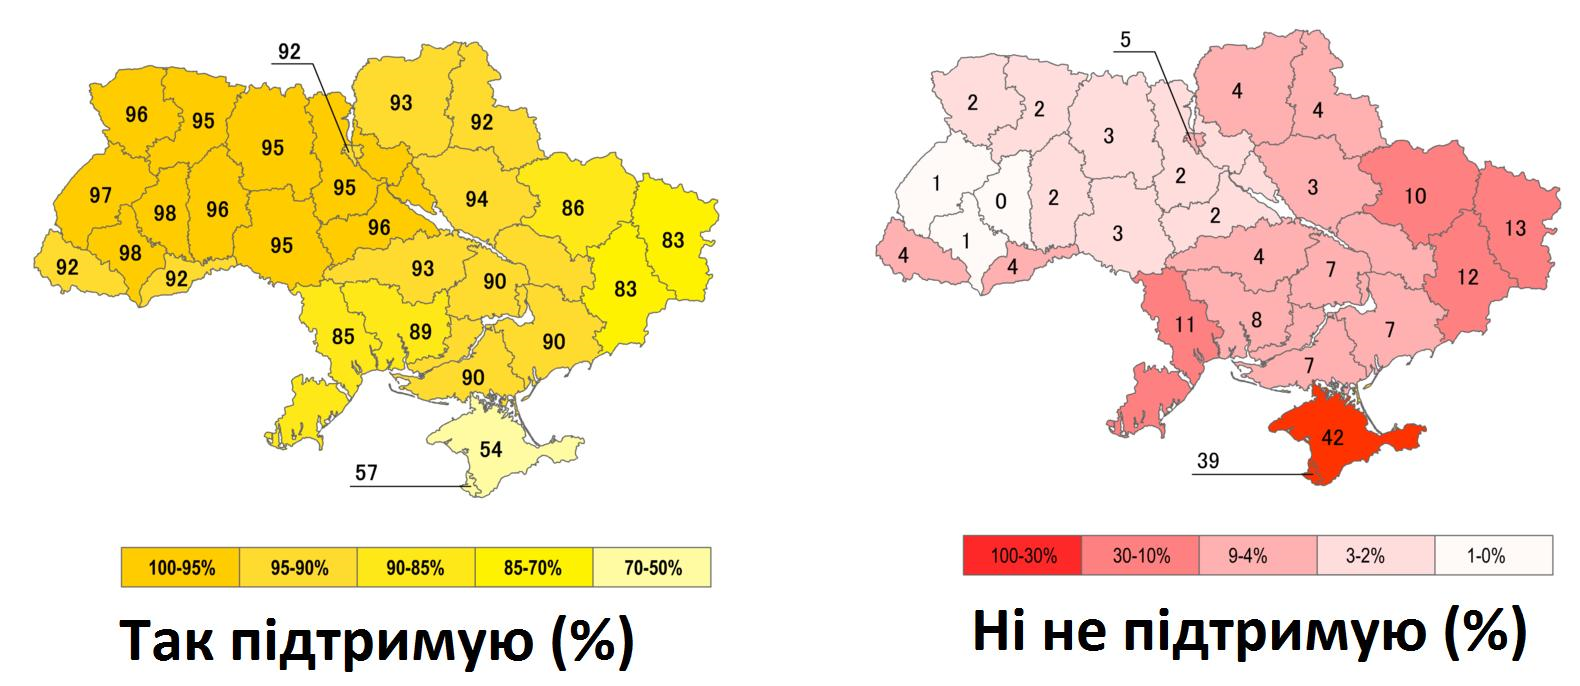 Границы украины 1991 и сейчас на карте. Карта Украины референдум 1991. Всеукраинский референдум (1991)независимость Украины. Карта Украины 1991 года. Карта референдума 1991 года на Украине.